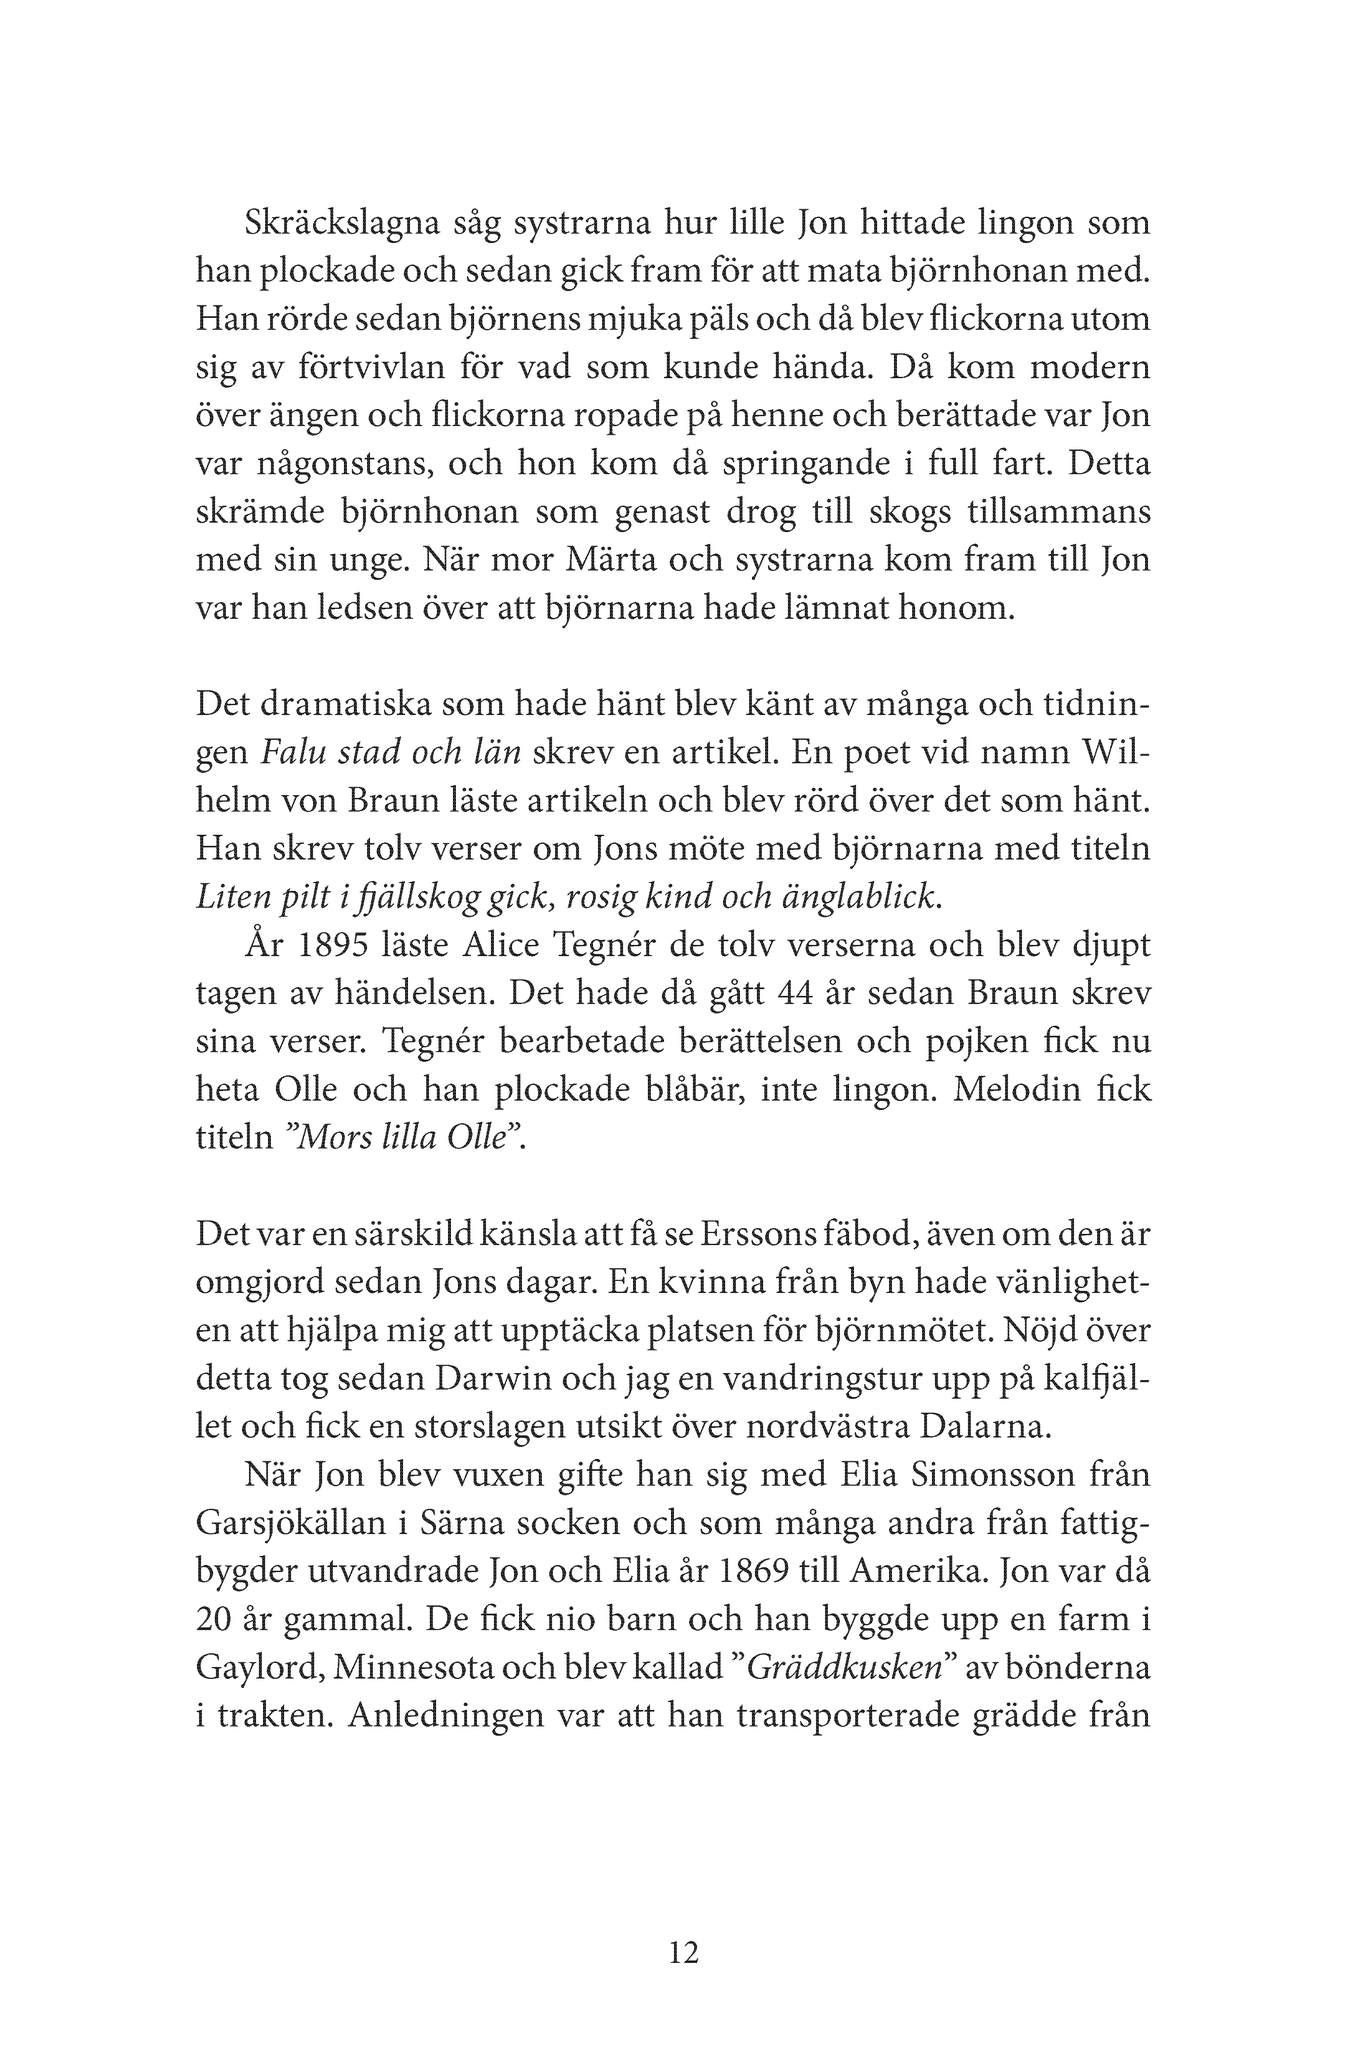 Darwins Resa genom Sverige - Del 1. En bok om udda människoöden, fantasikittlande sägner, naturens egna konstverk och intressant historia. Kan användas som resehandbok.